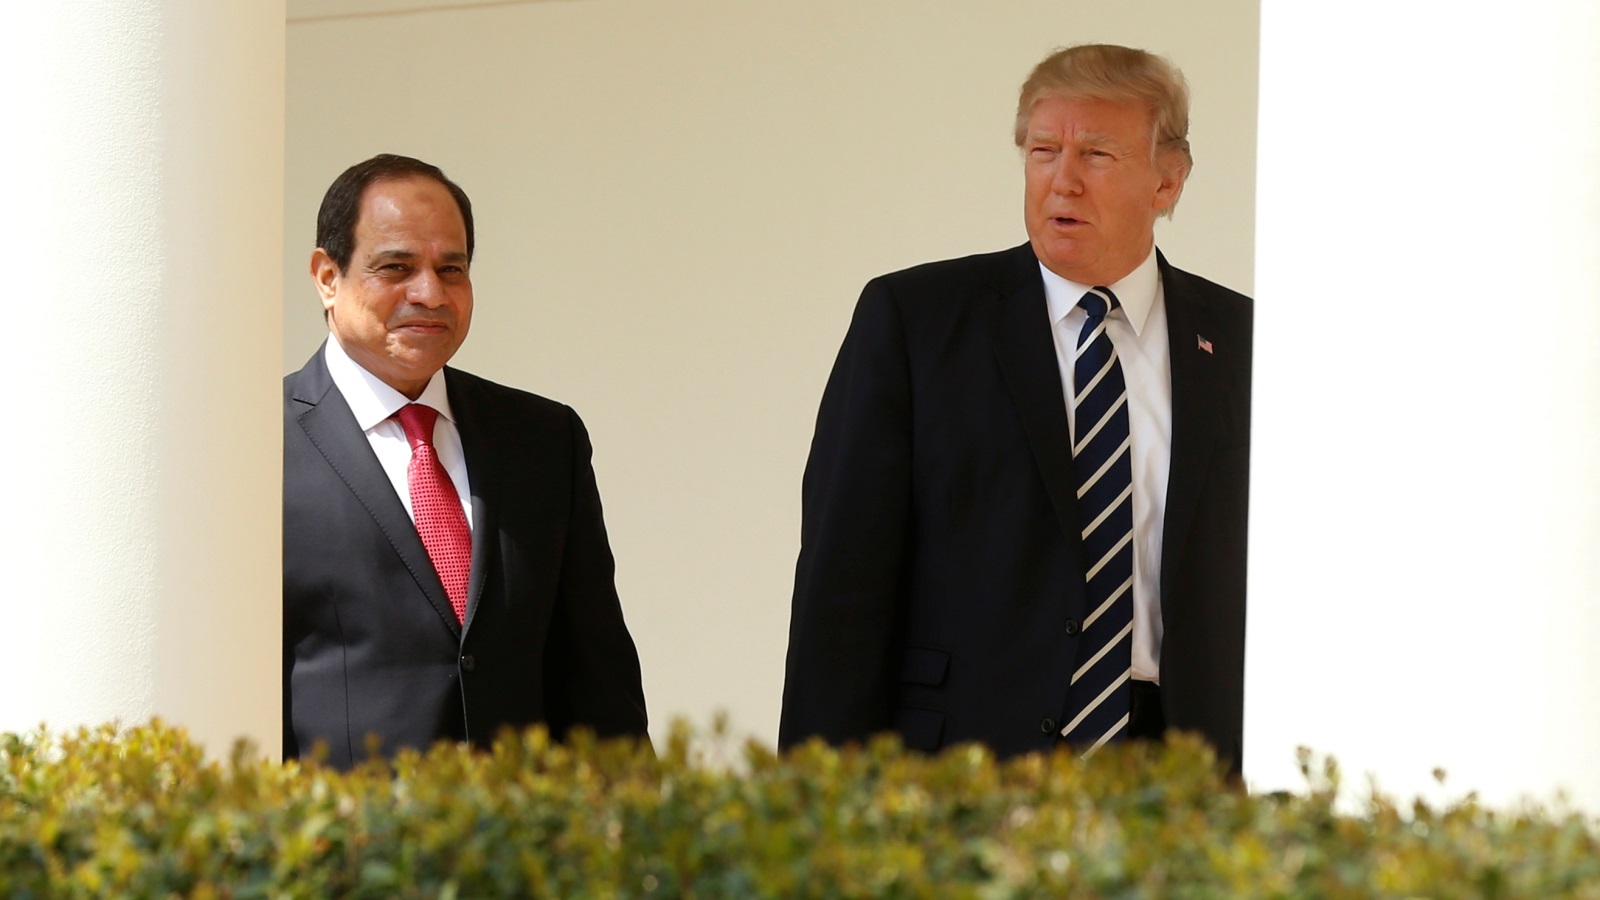 الرئيس الأمريكي دونالد ترمب مع الرئيس المصري عبدالفتاح السيسي في البيت الأبيض (رويترز)